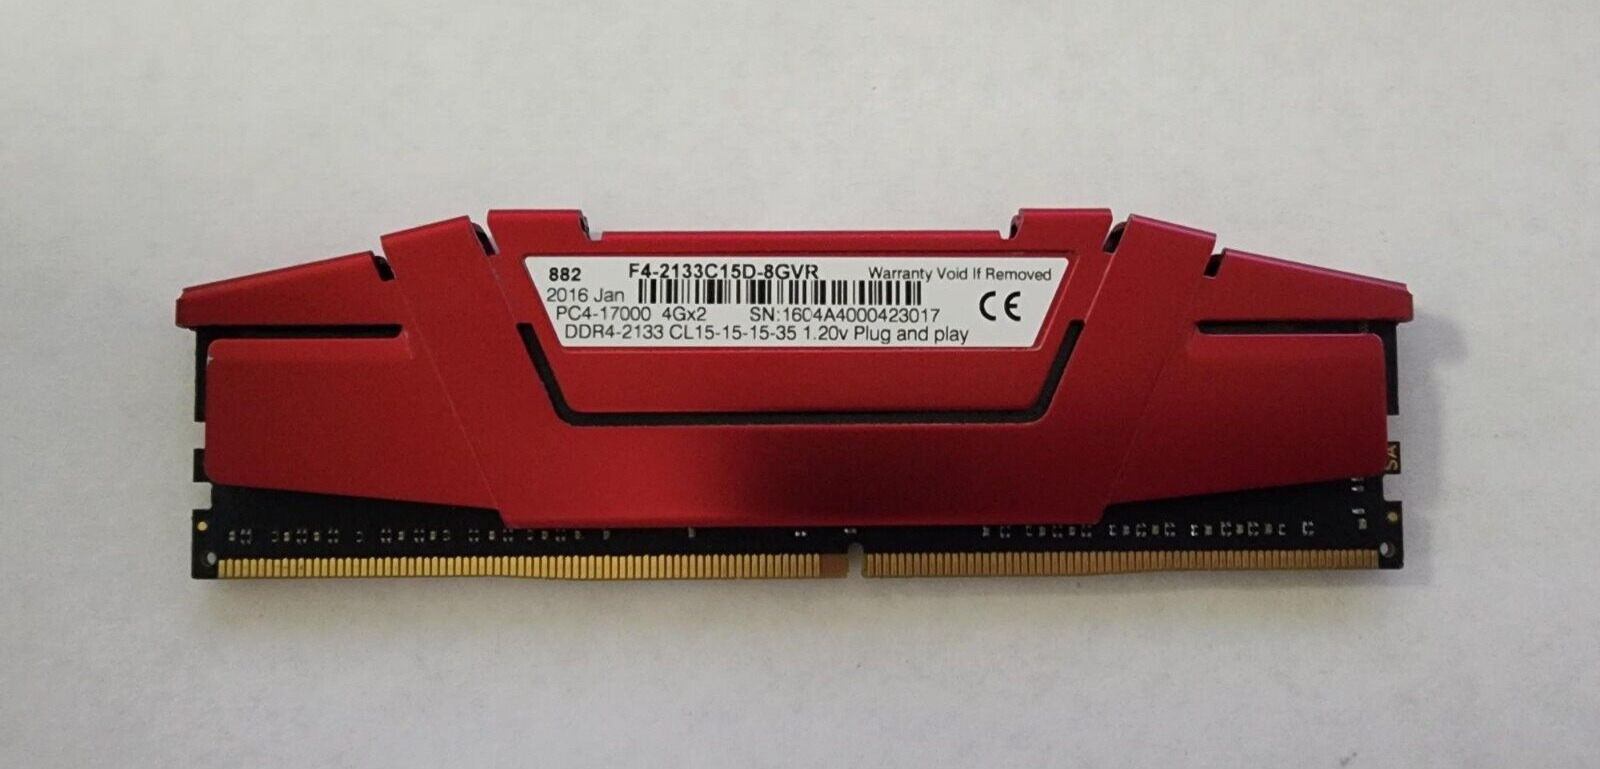 G. SKILL RIPJAWS V 4GB DDR4-2133MHz PC4-17000 1.2V SDRAM F4-2133C15D-8GVR